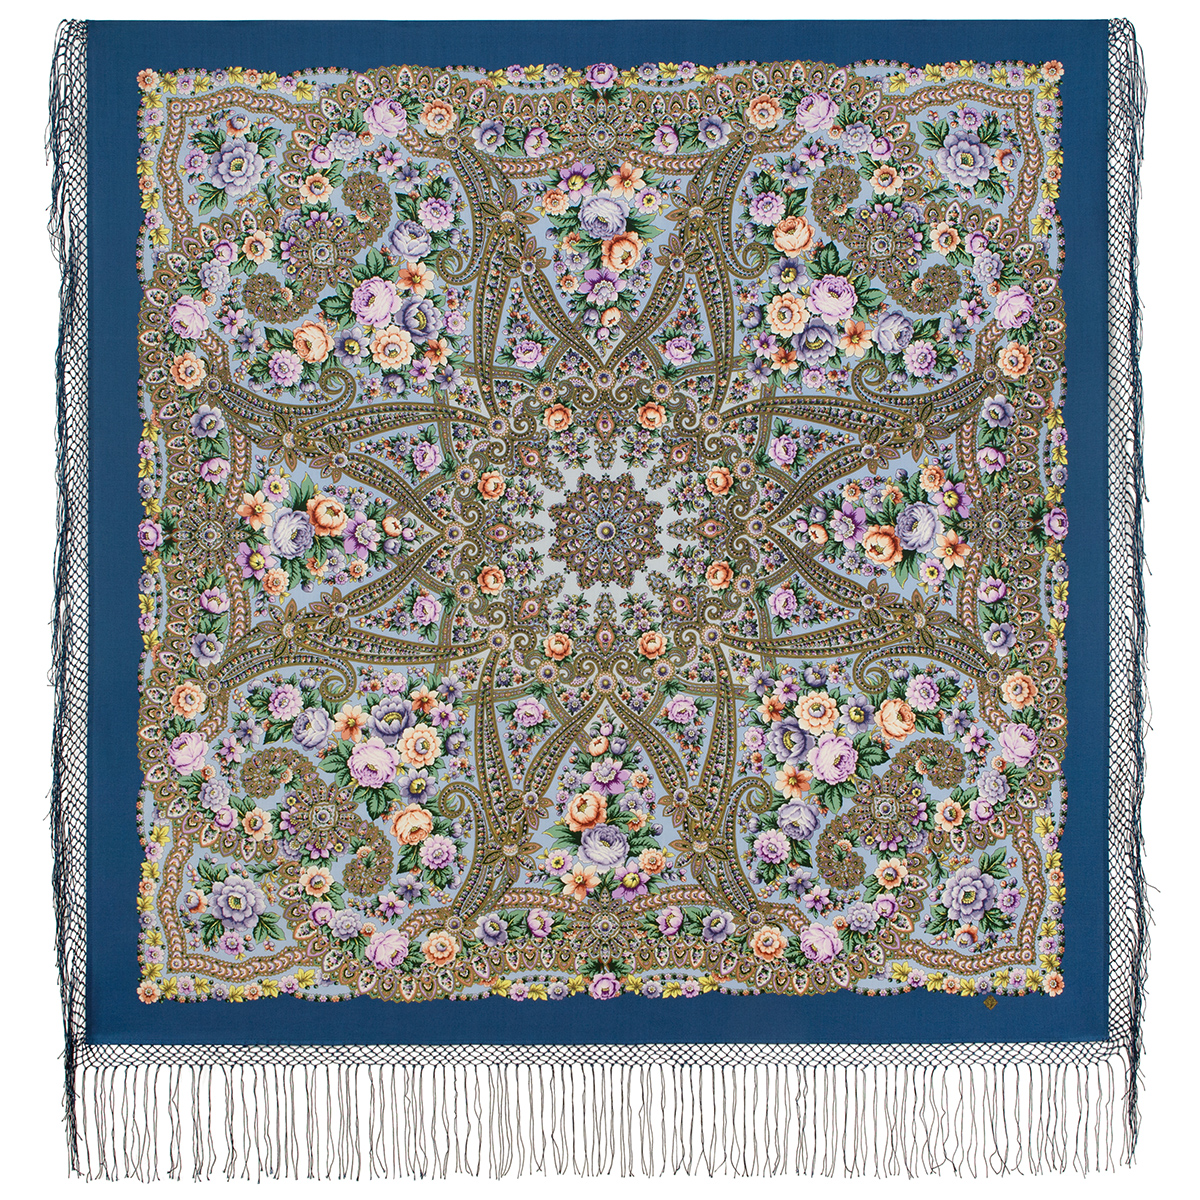 Платок женский Павловопосадский платок 1914 синий, 148х148 см